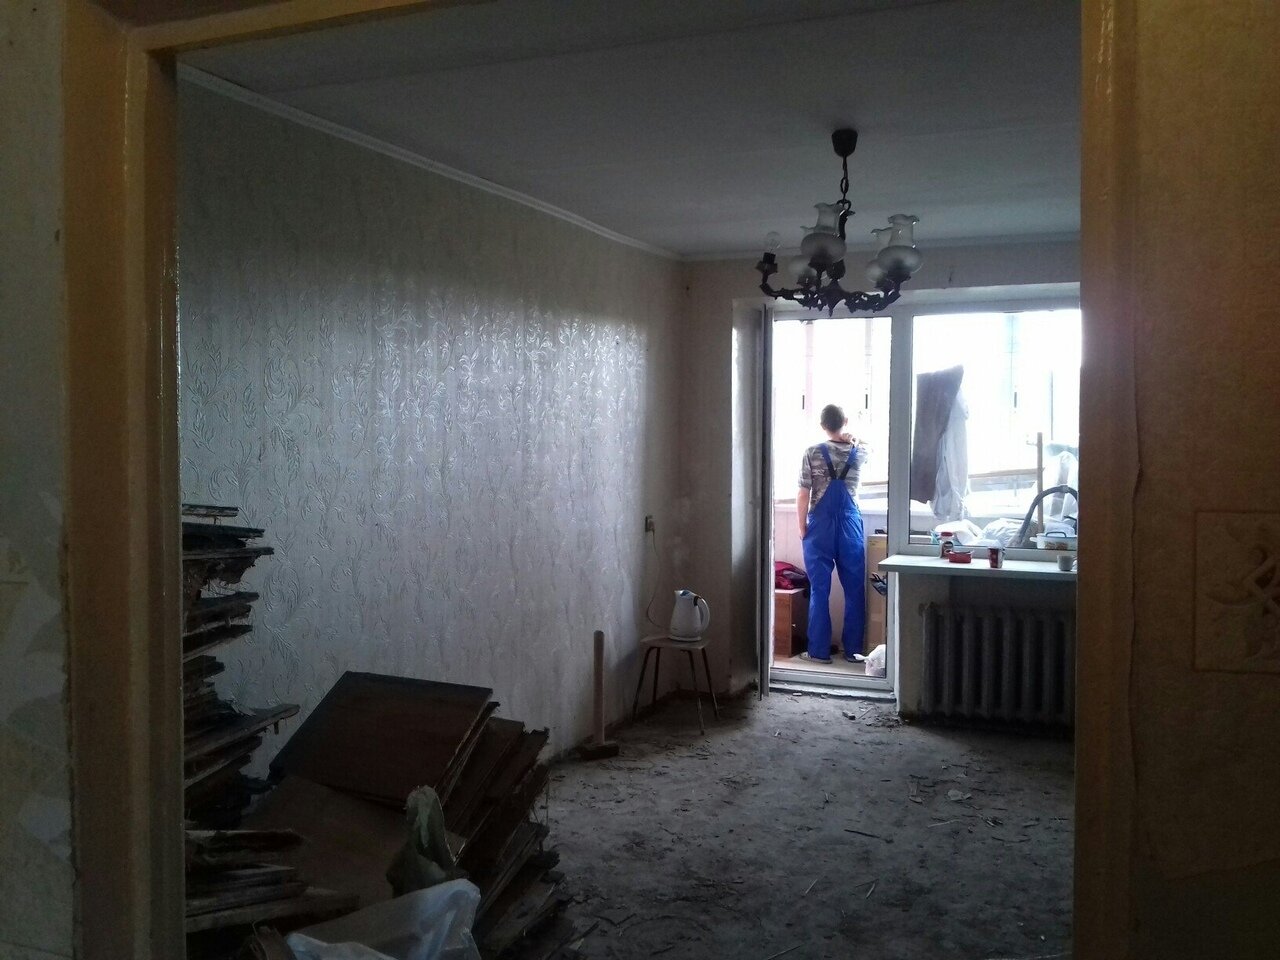 Мужик без дизайнеров сам придумал и сделал ремонт в своей квартире. Фото До/После.